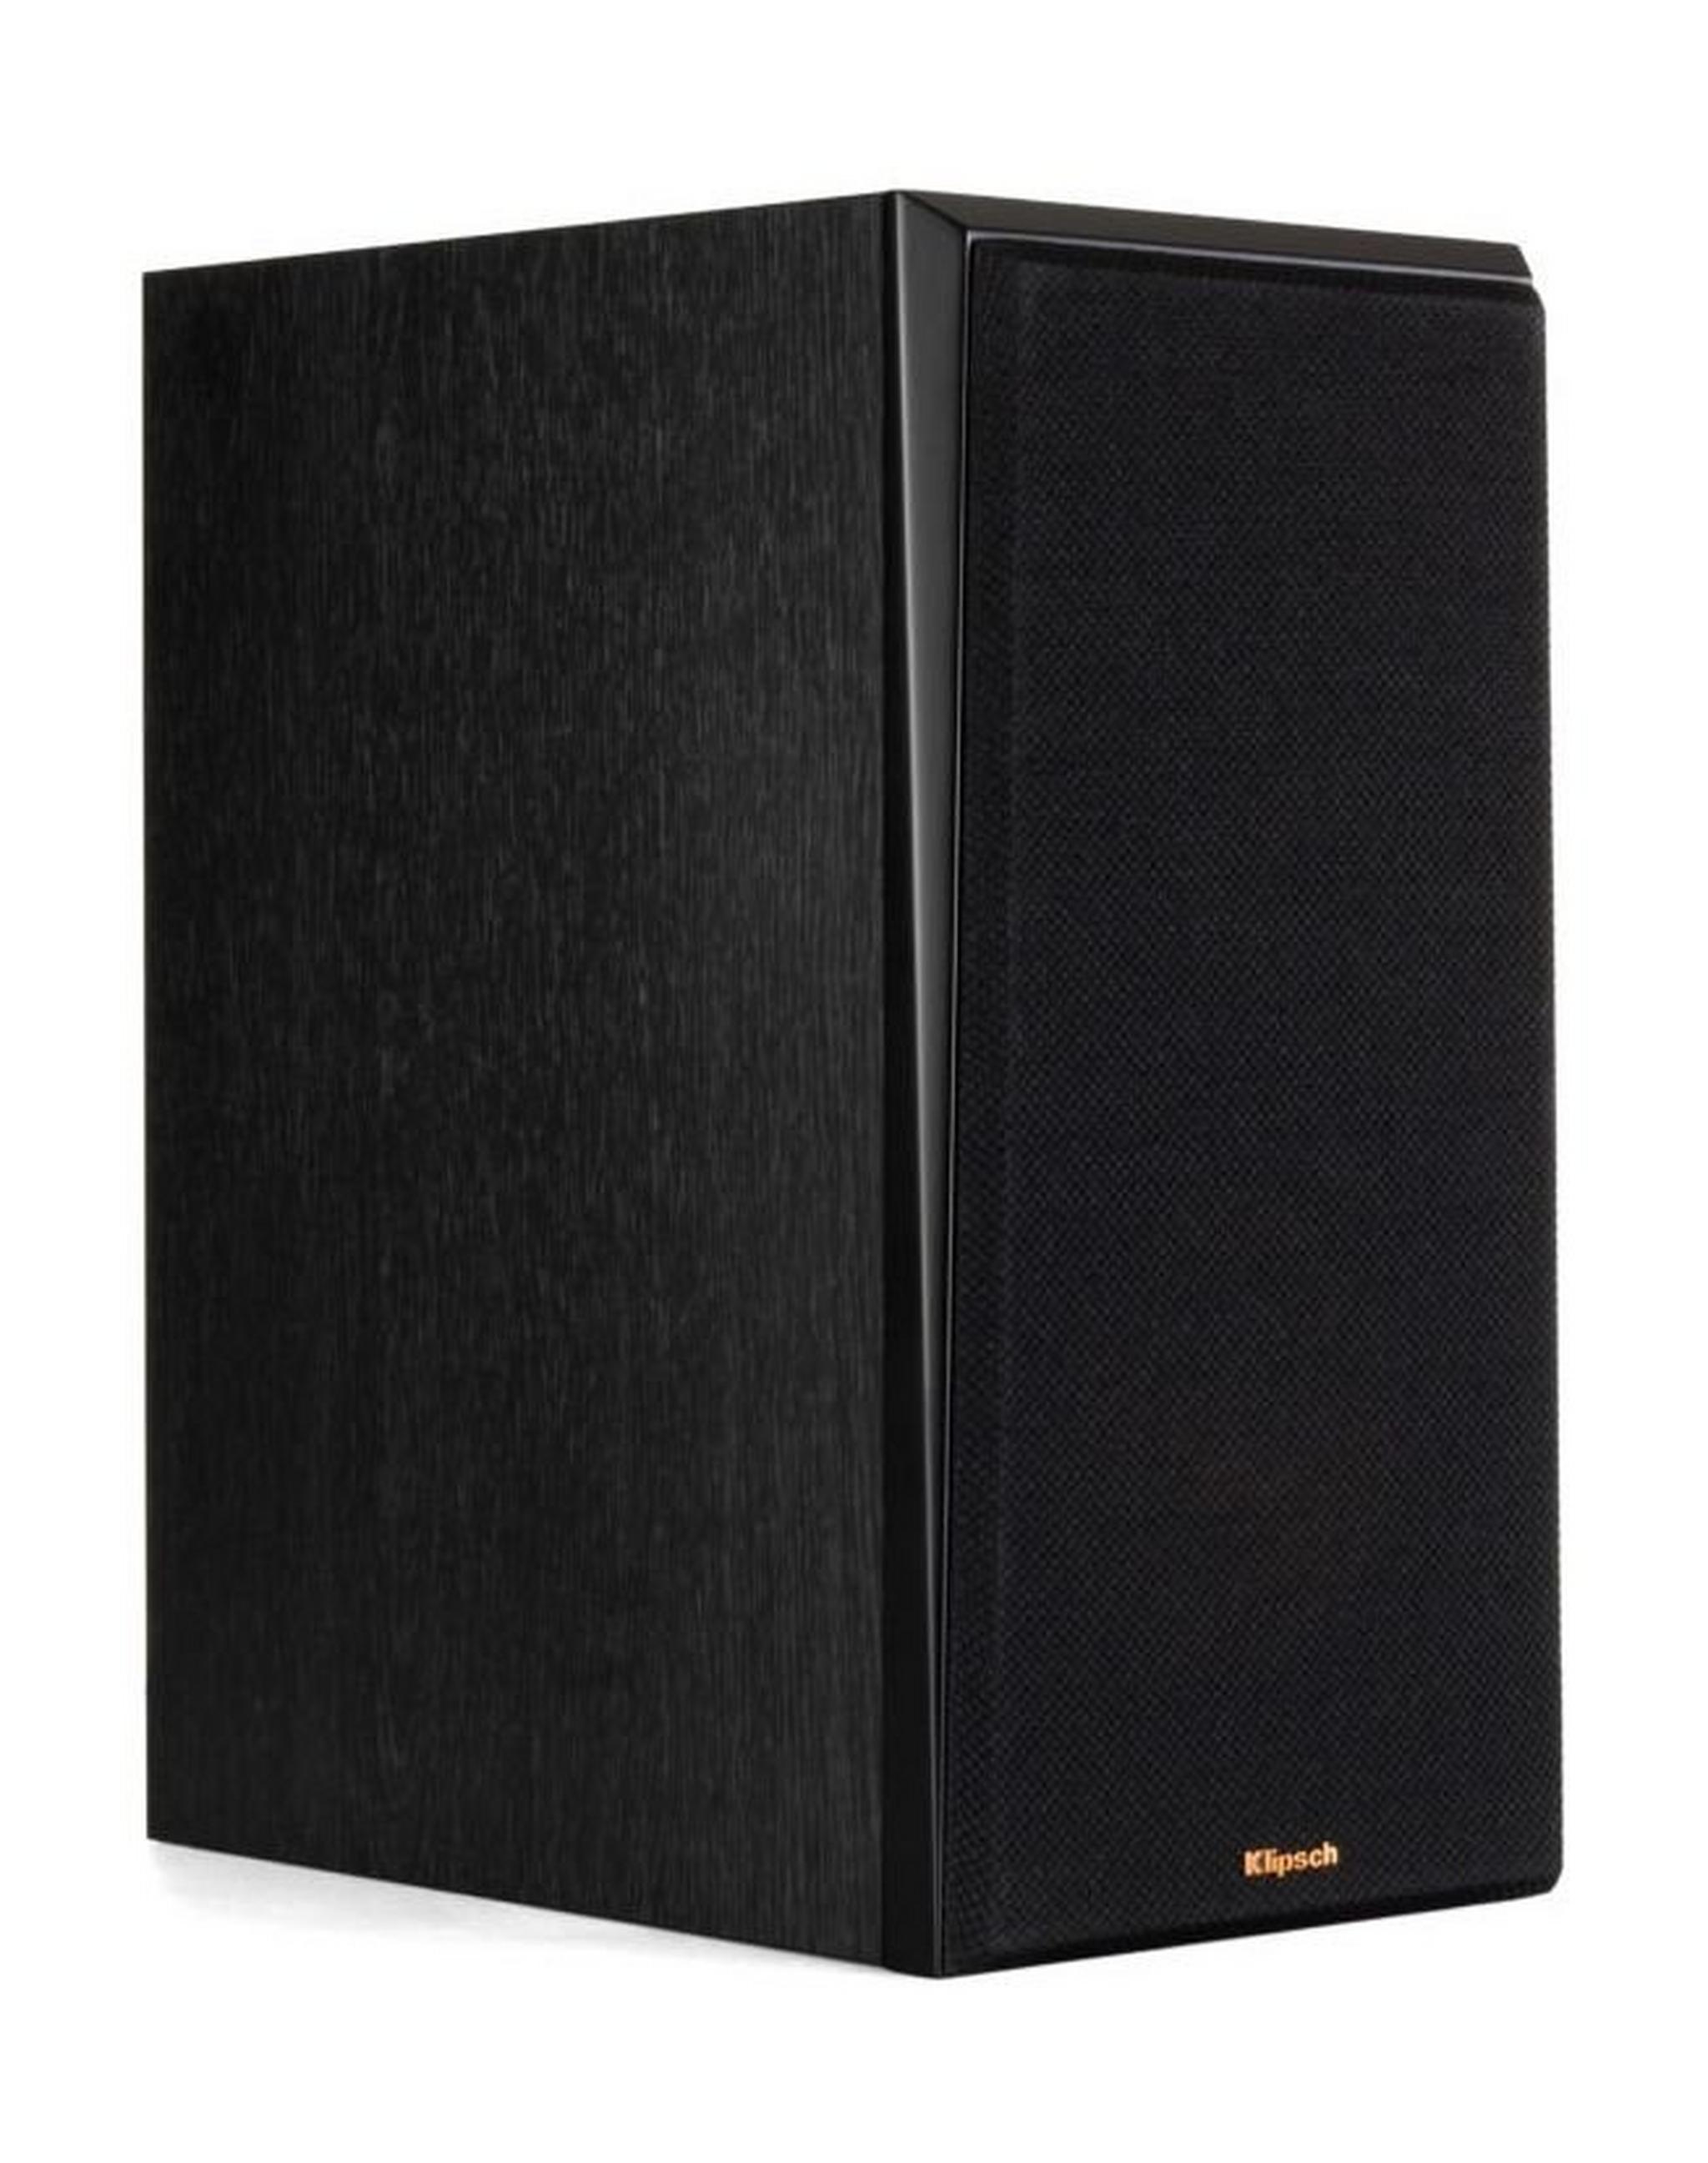 Klipsch RP-600M Bookshelf Speaker - Black